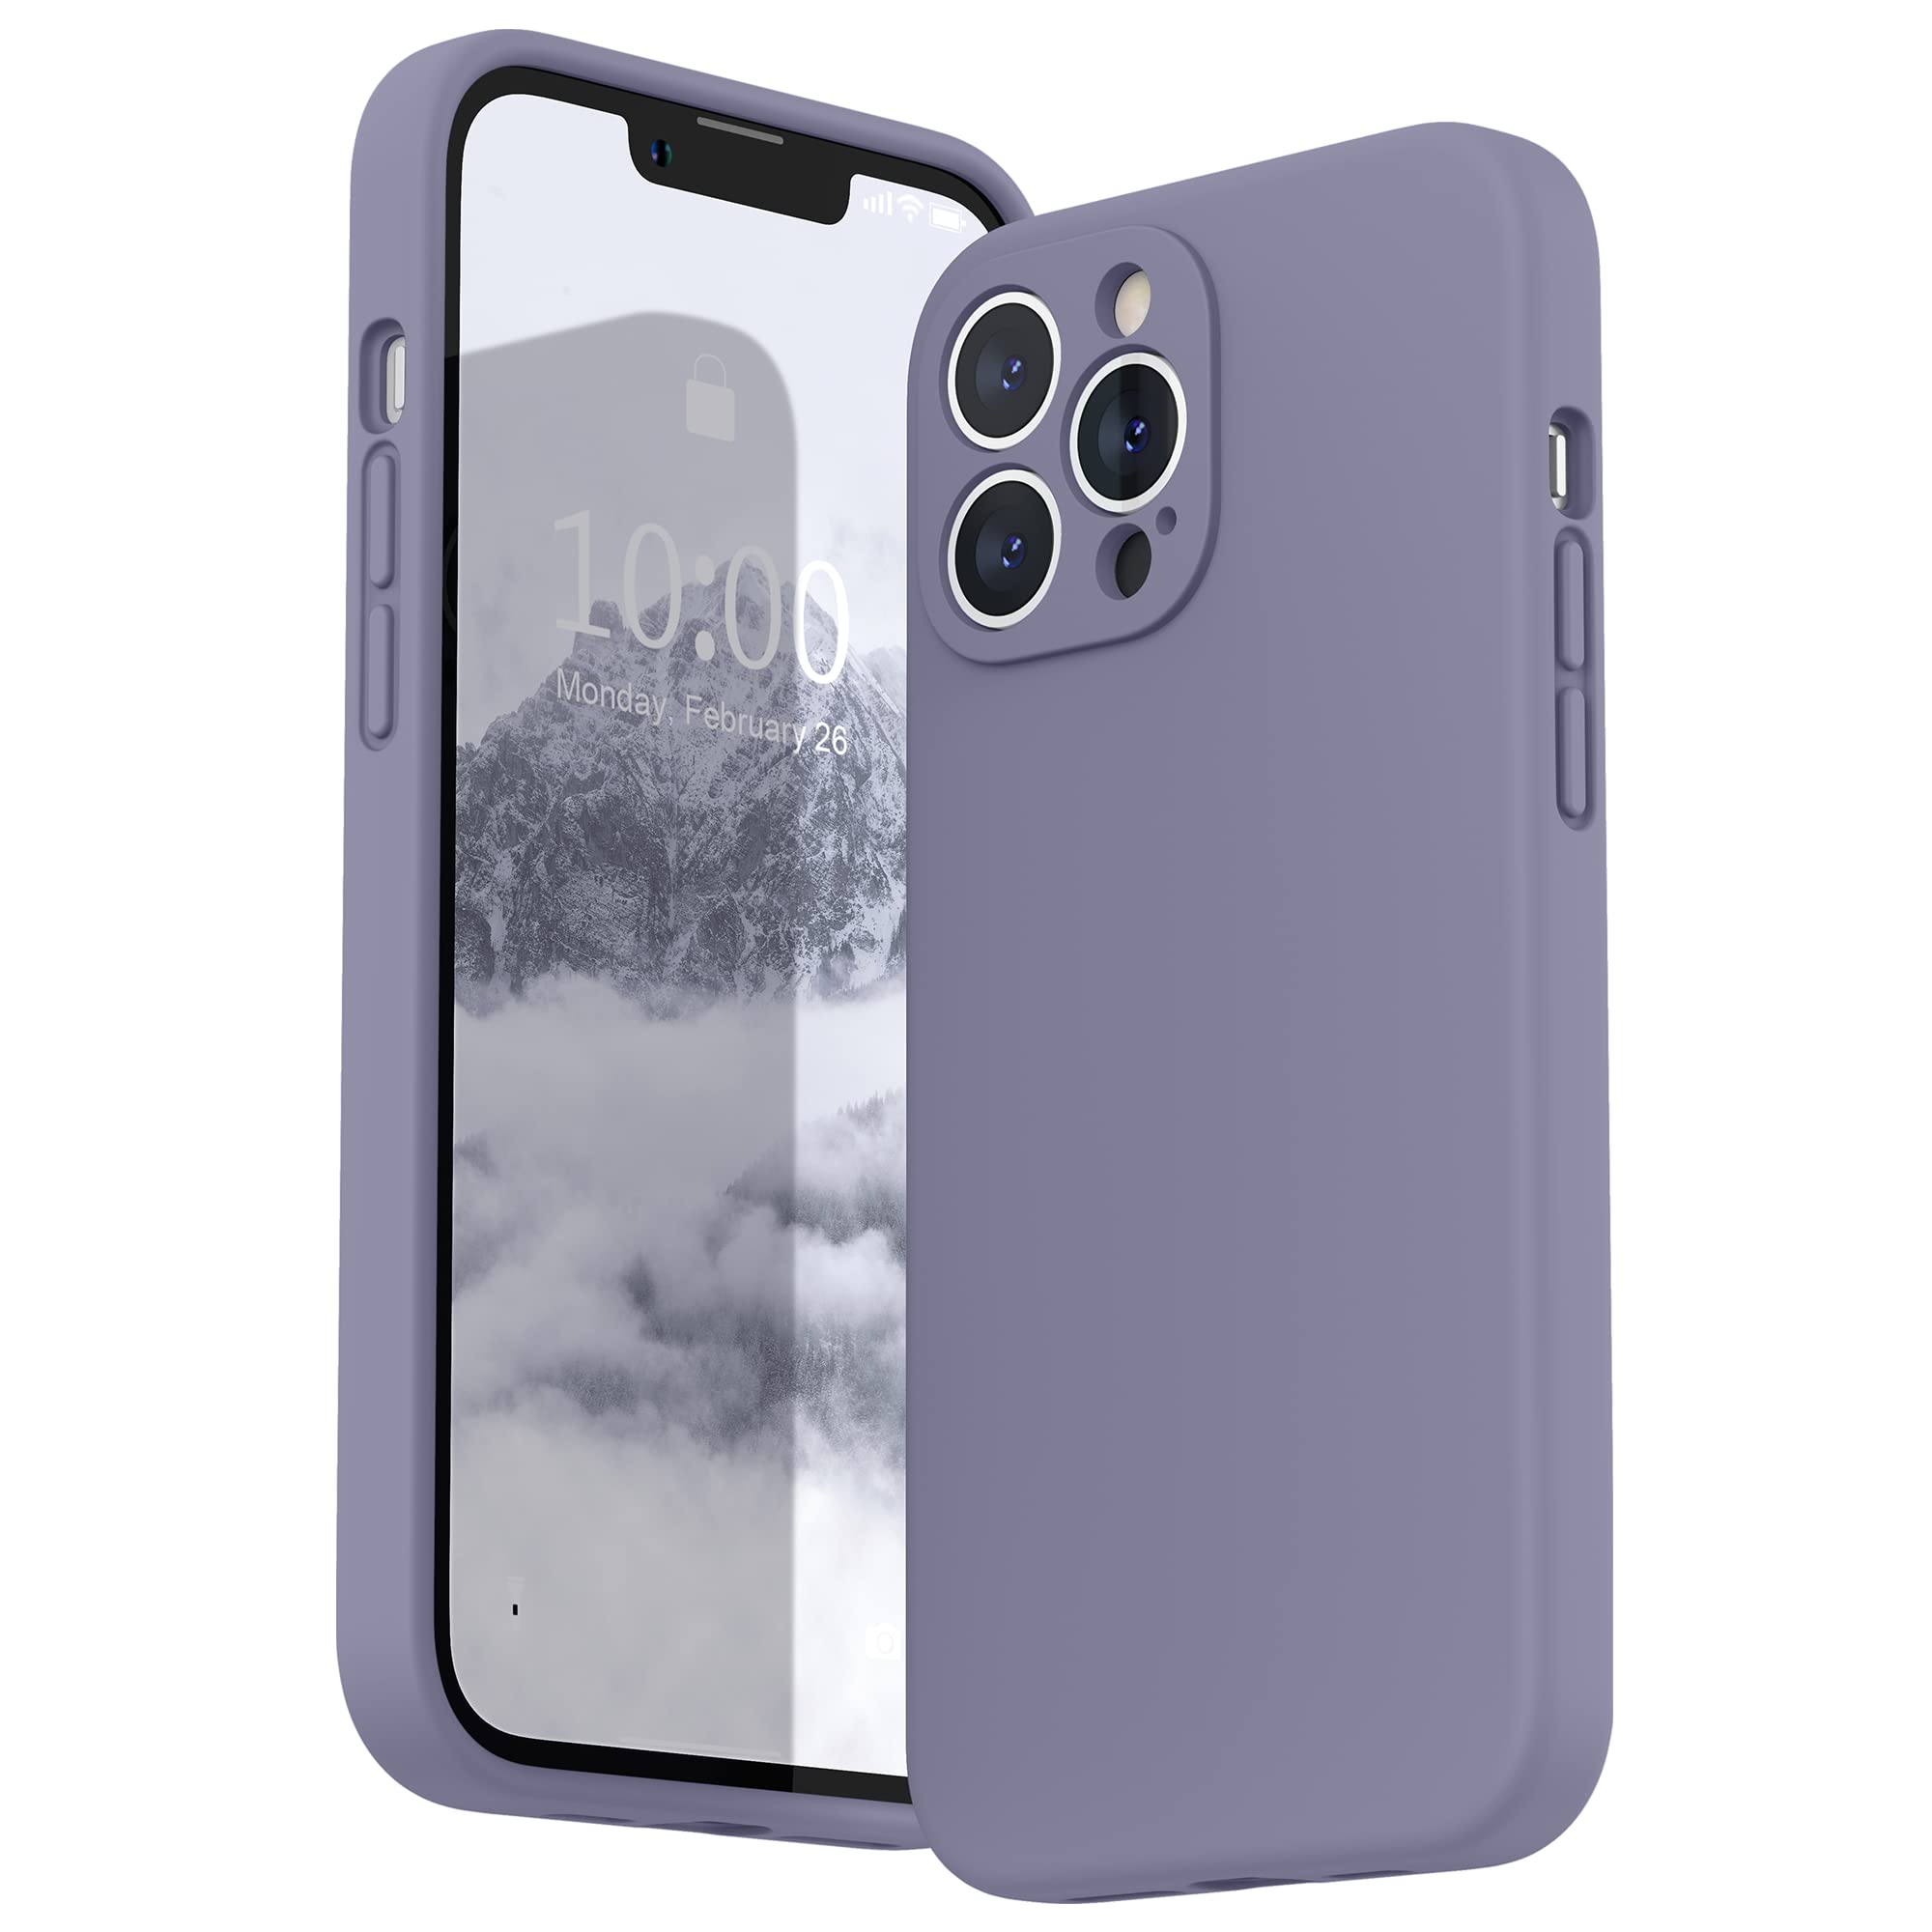 iPhone Case - Lavender Grey Liquid Silicone